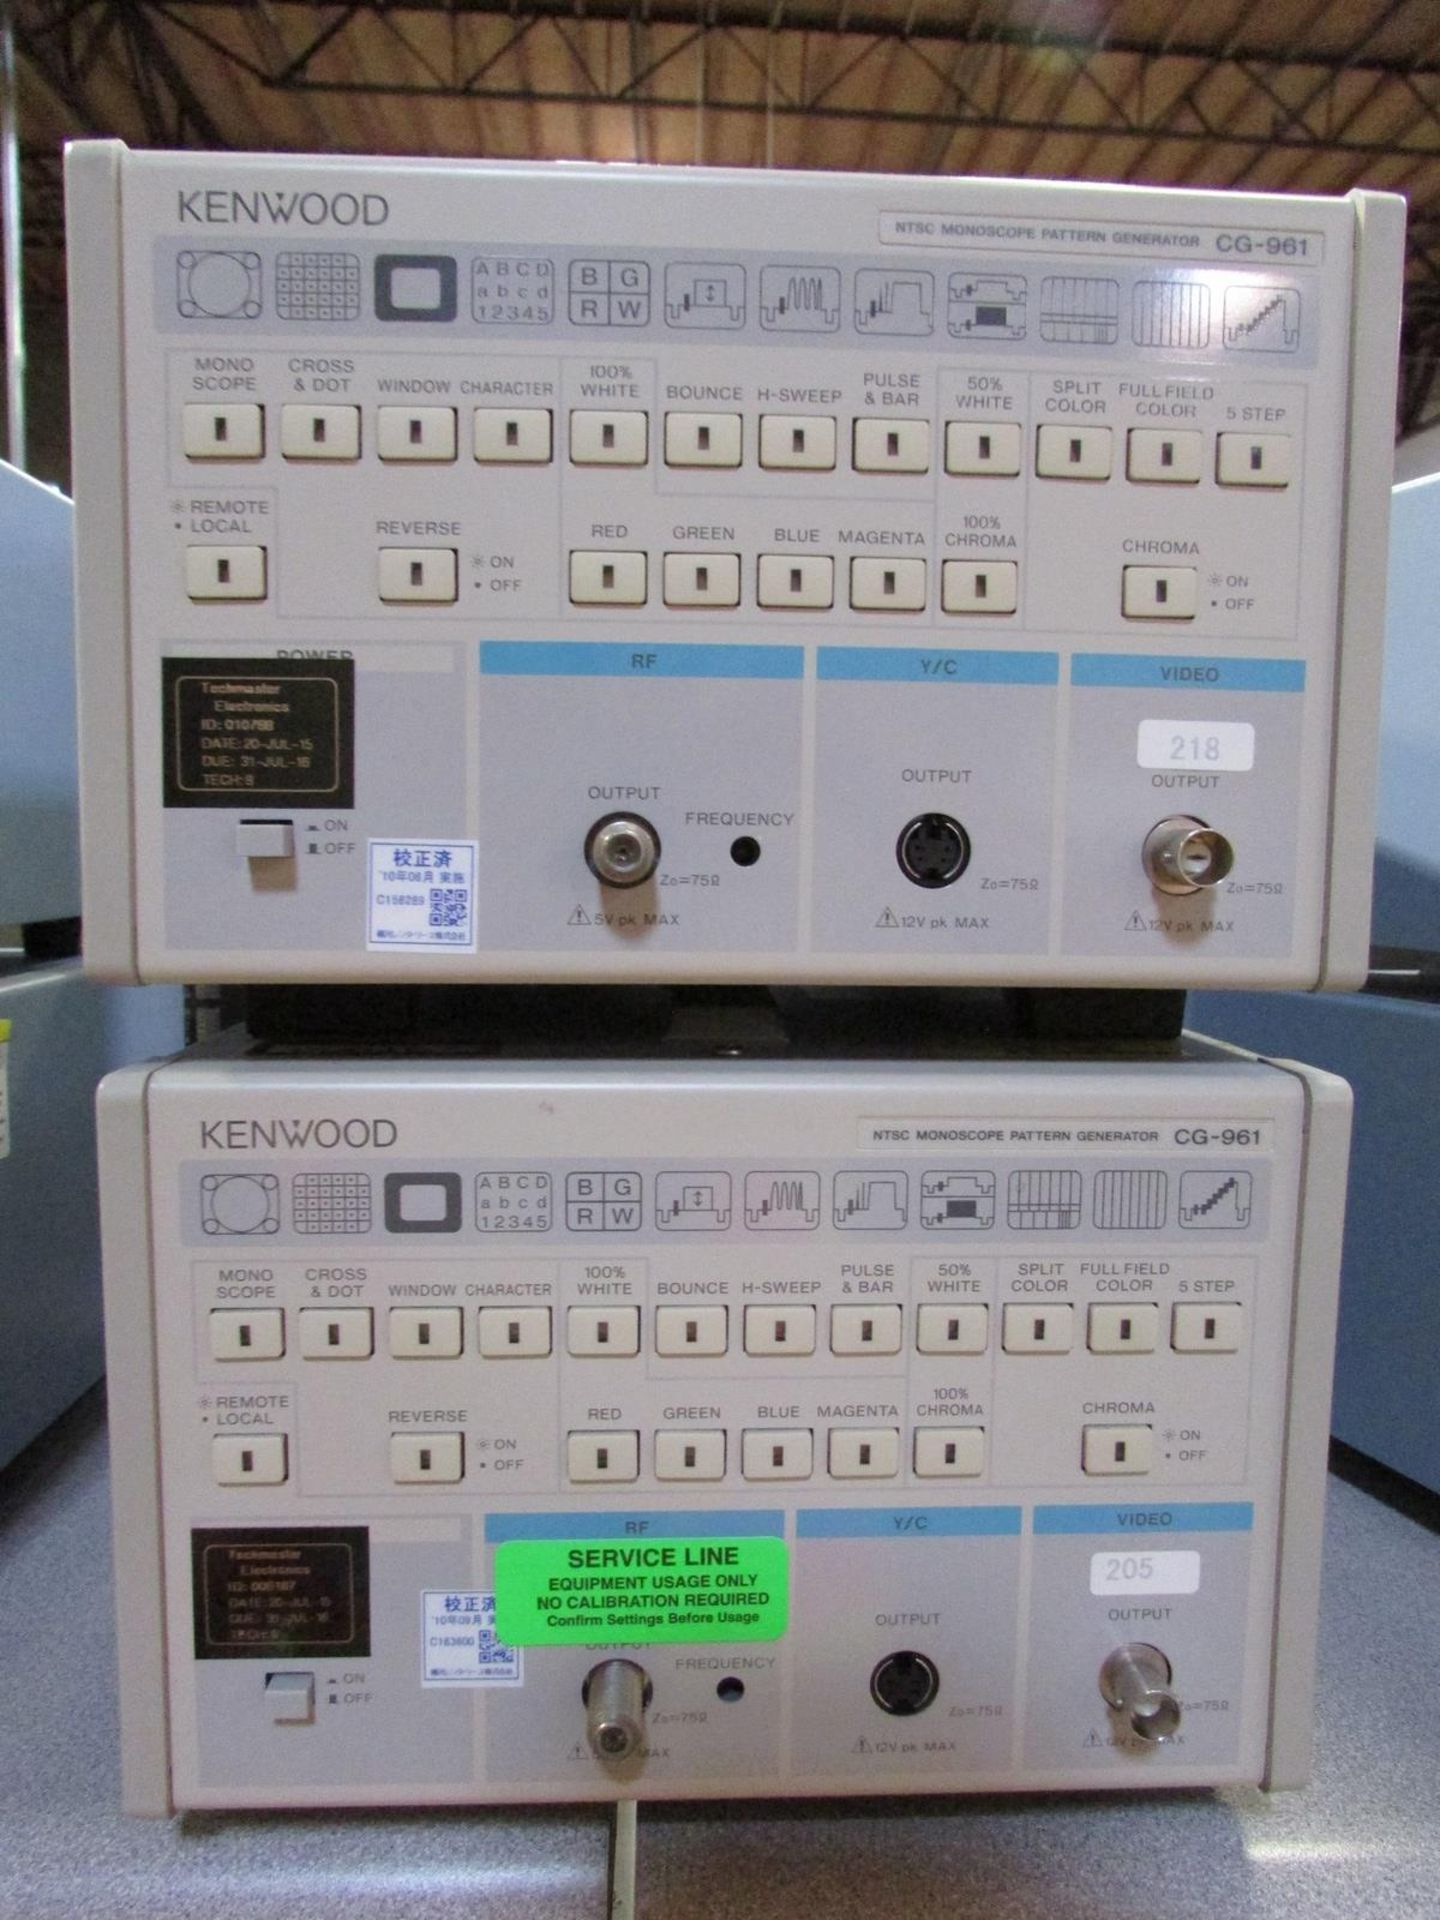 Kenwood/Texio CG-961 NTSC Monoscope Pattern Generators - Image 2 of 3